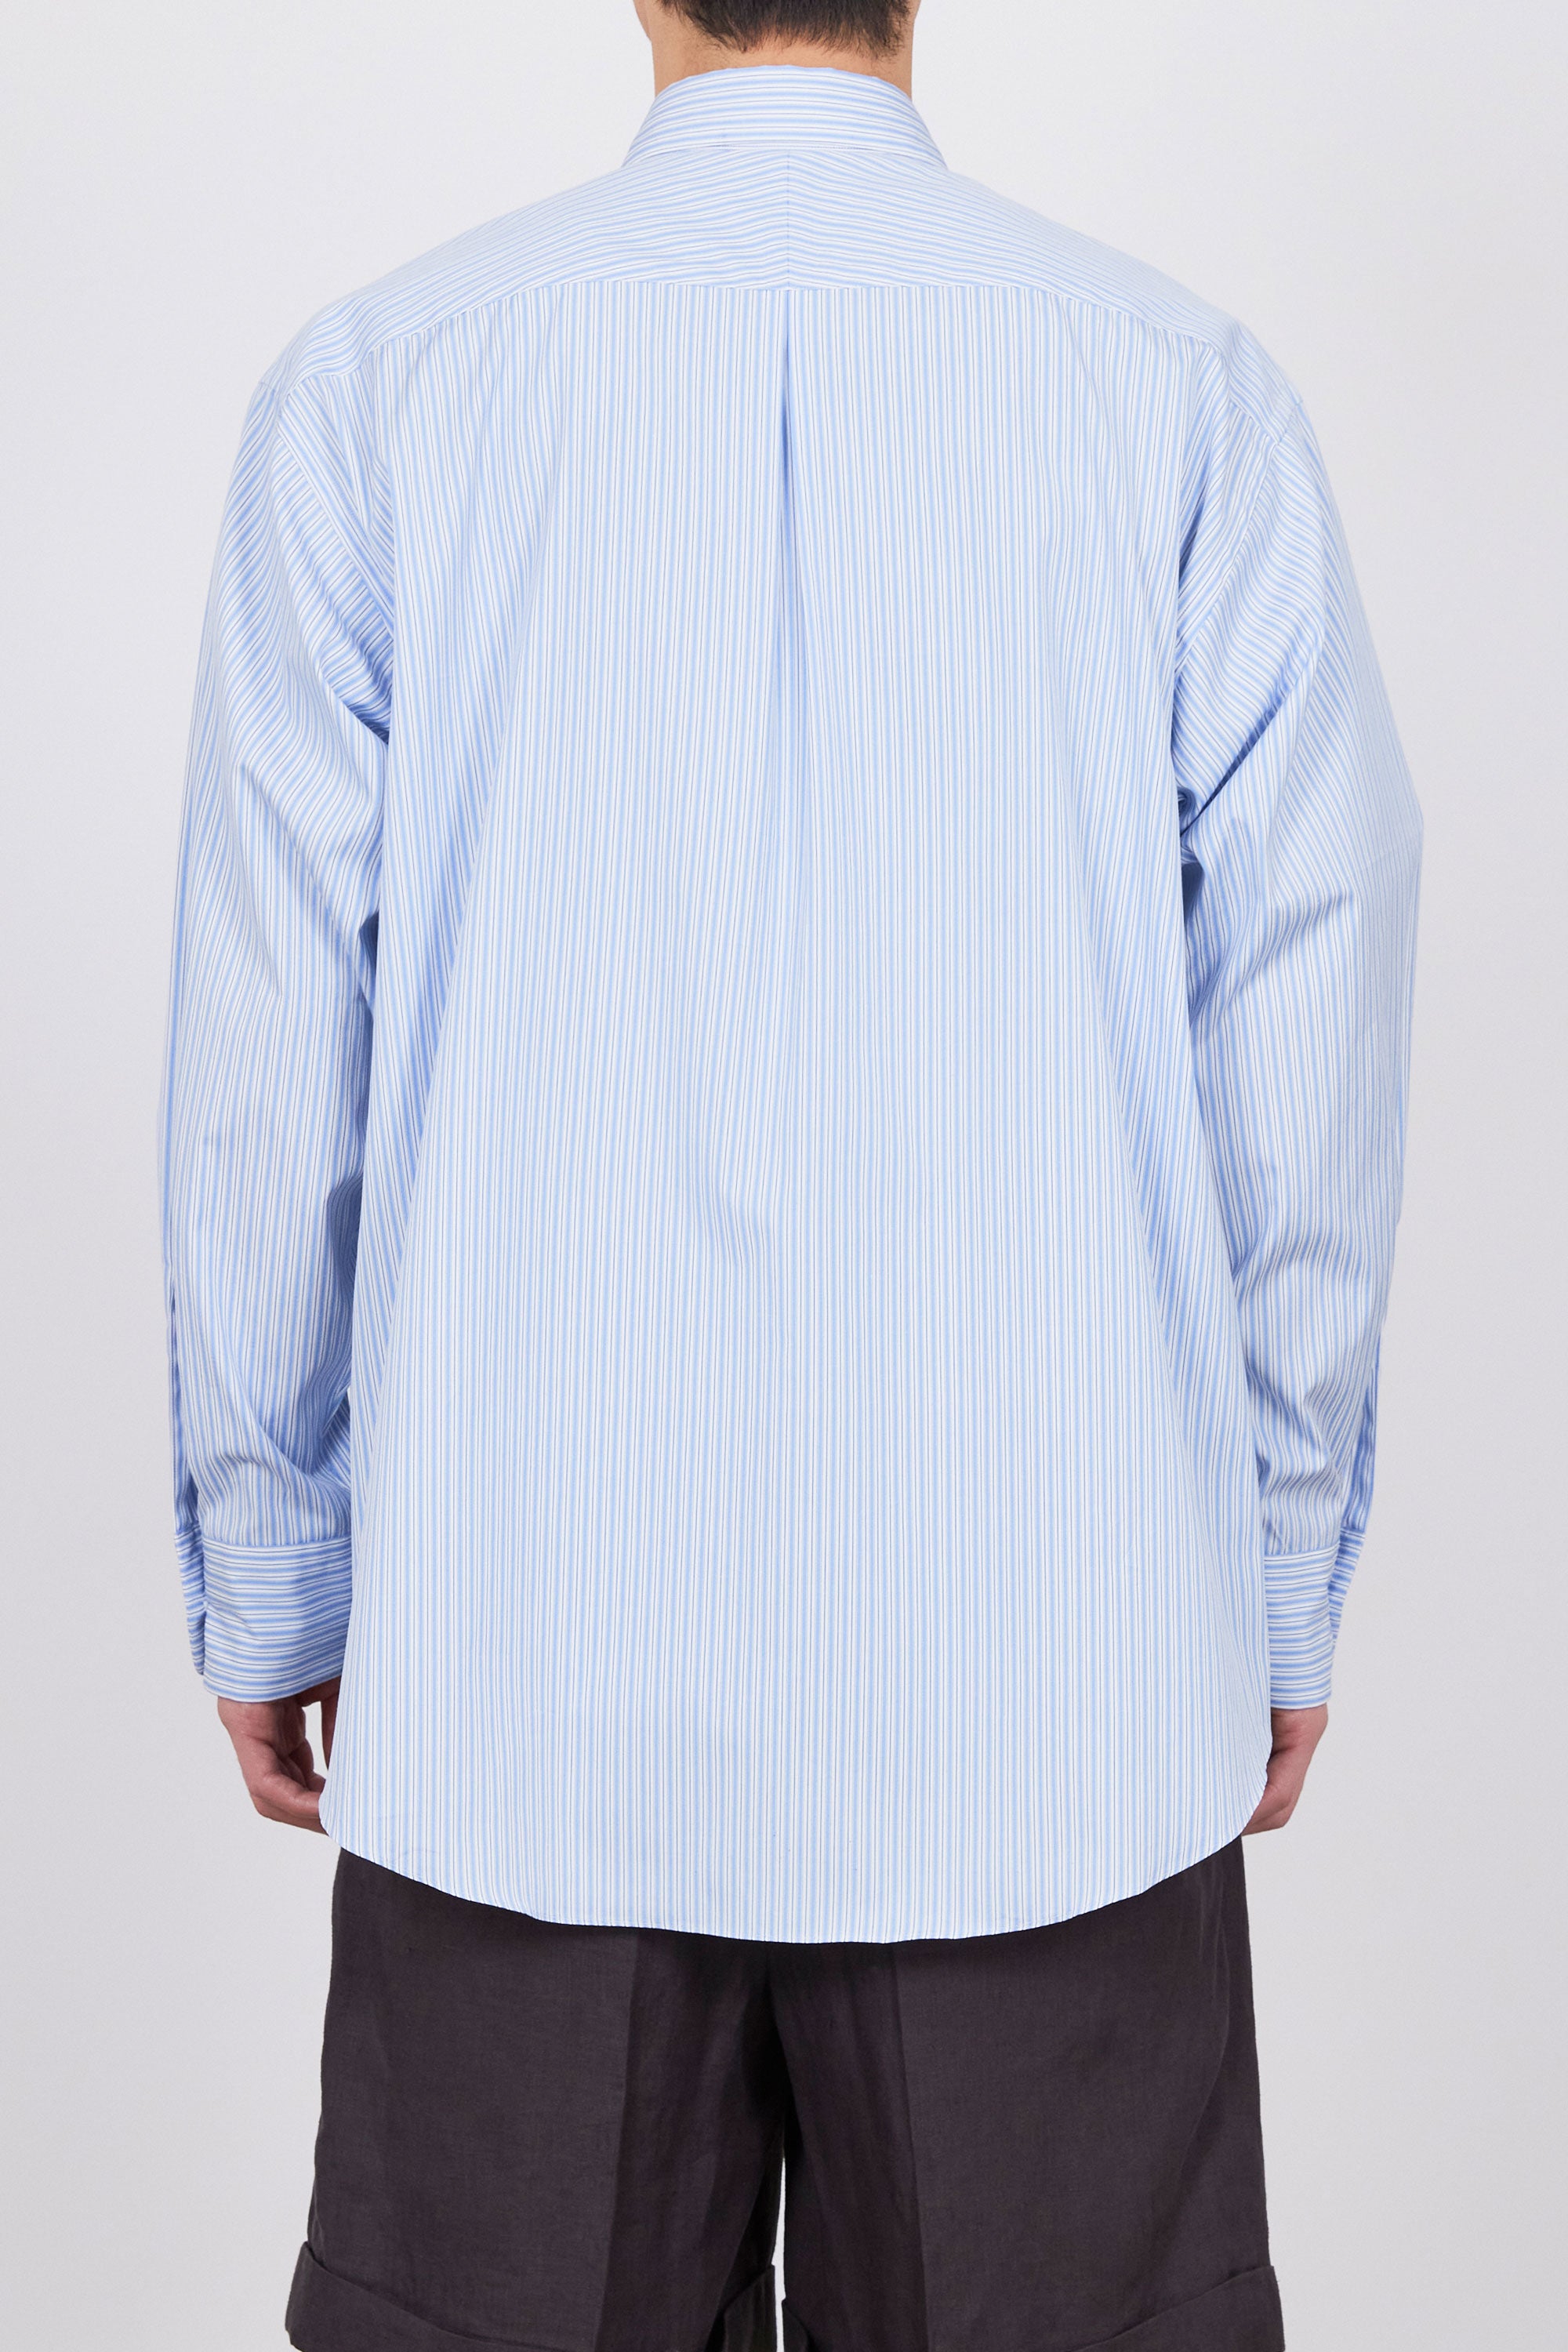 ソクタス ストライプポプリン / コンフォートフィットシャツ, Blue Stripe